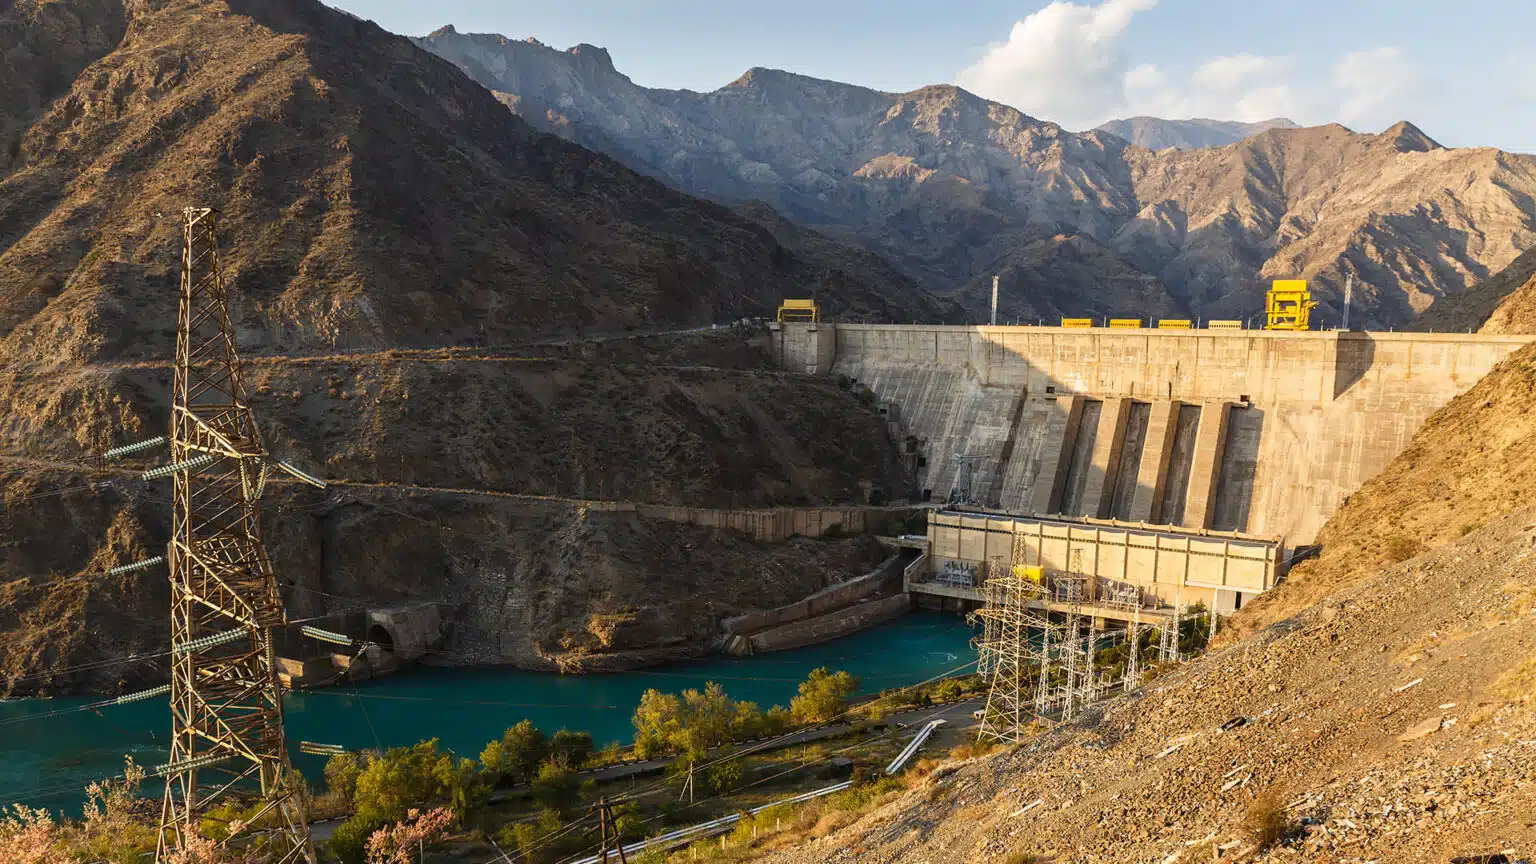 Қазақстан, Қырғызстан және Өзбекстан Қамбар-Ата ГЭС-1 құрылысы туралы келісімге келеді